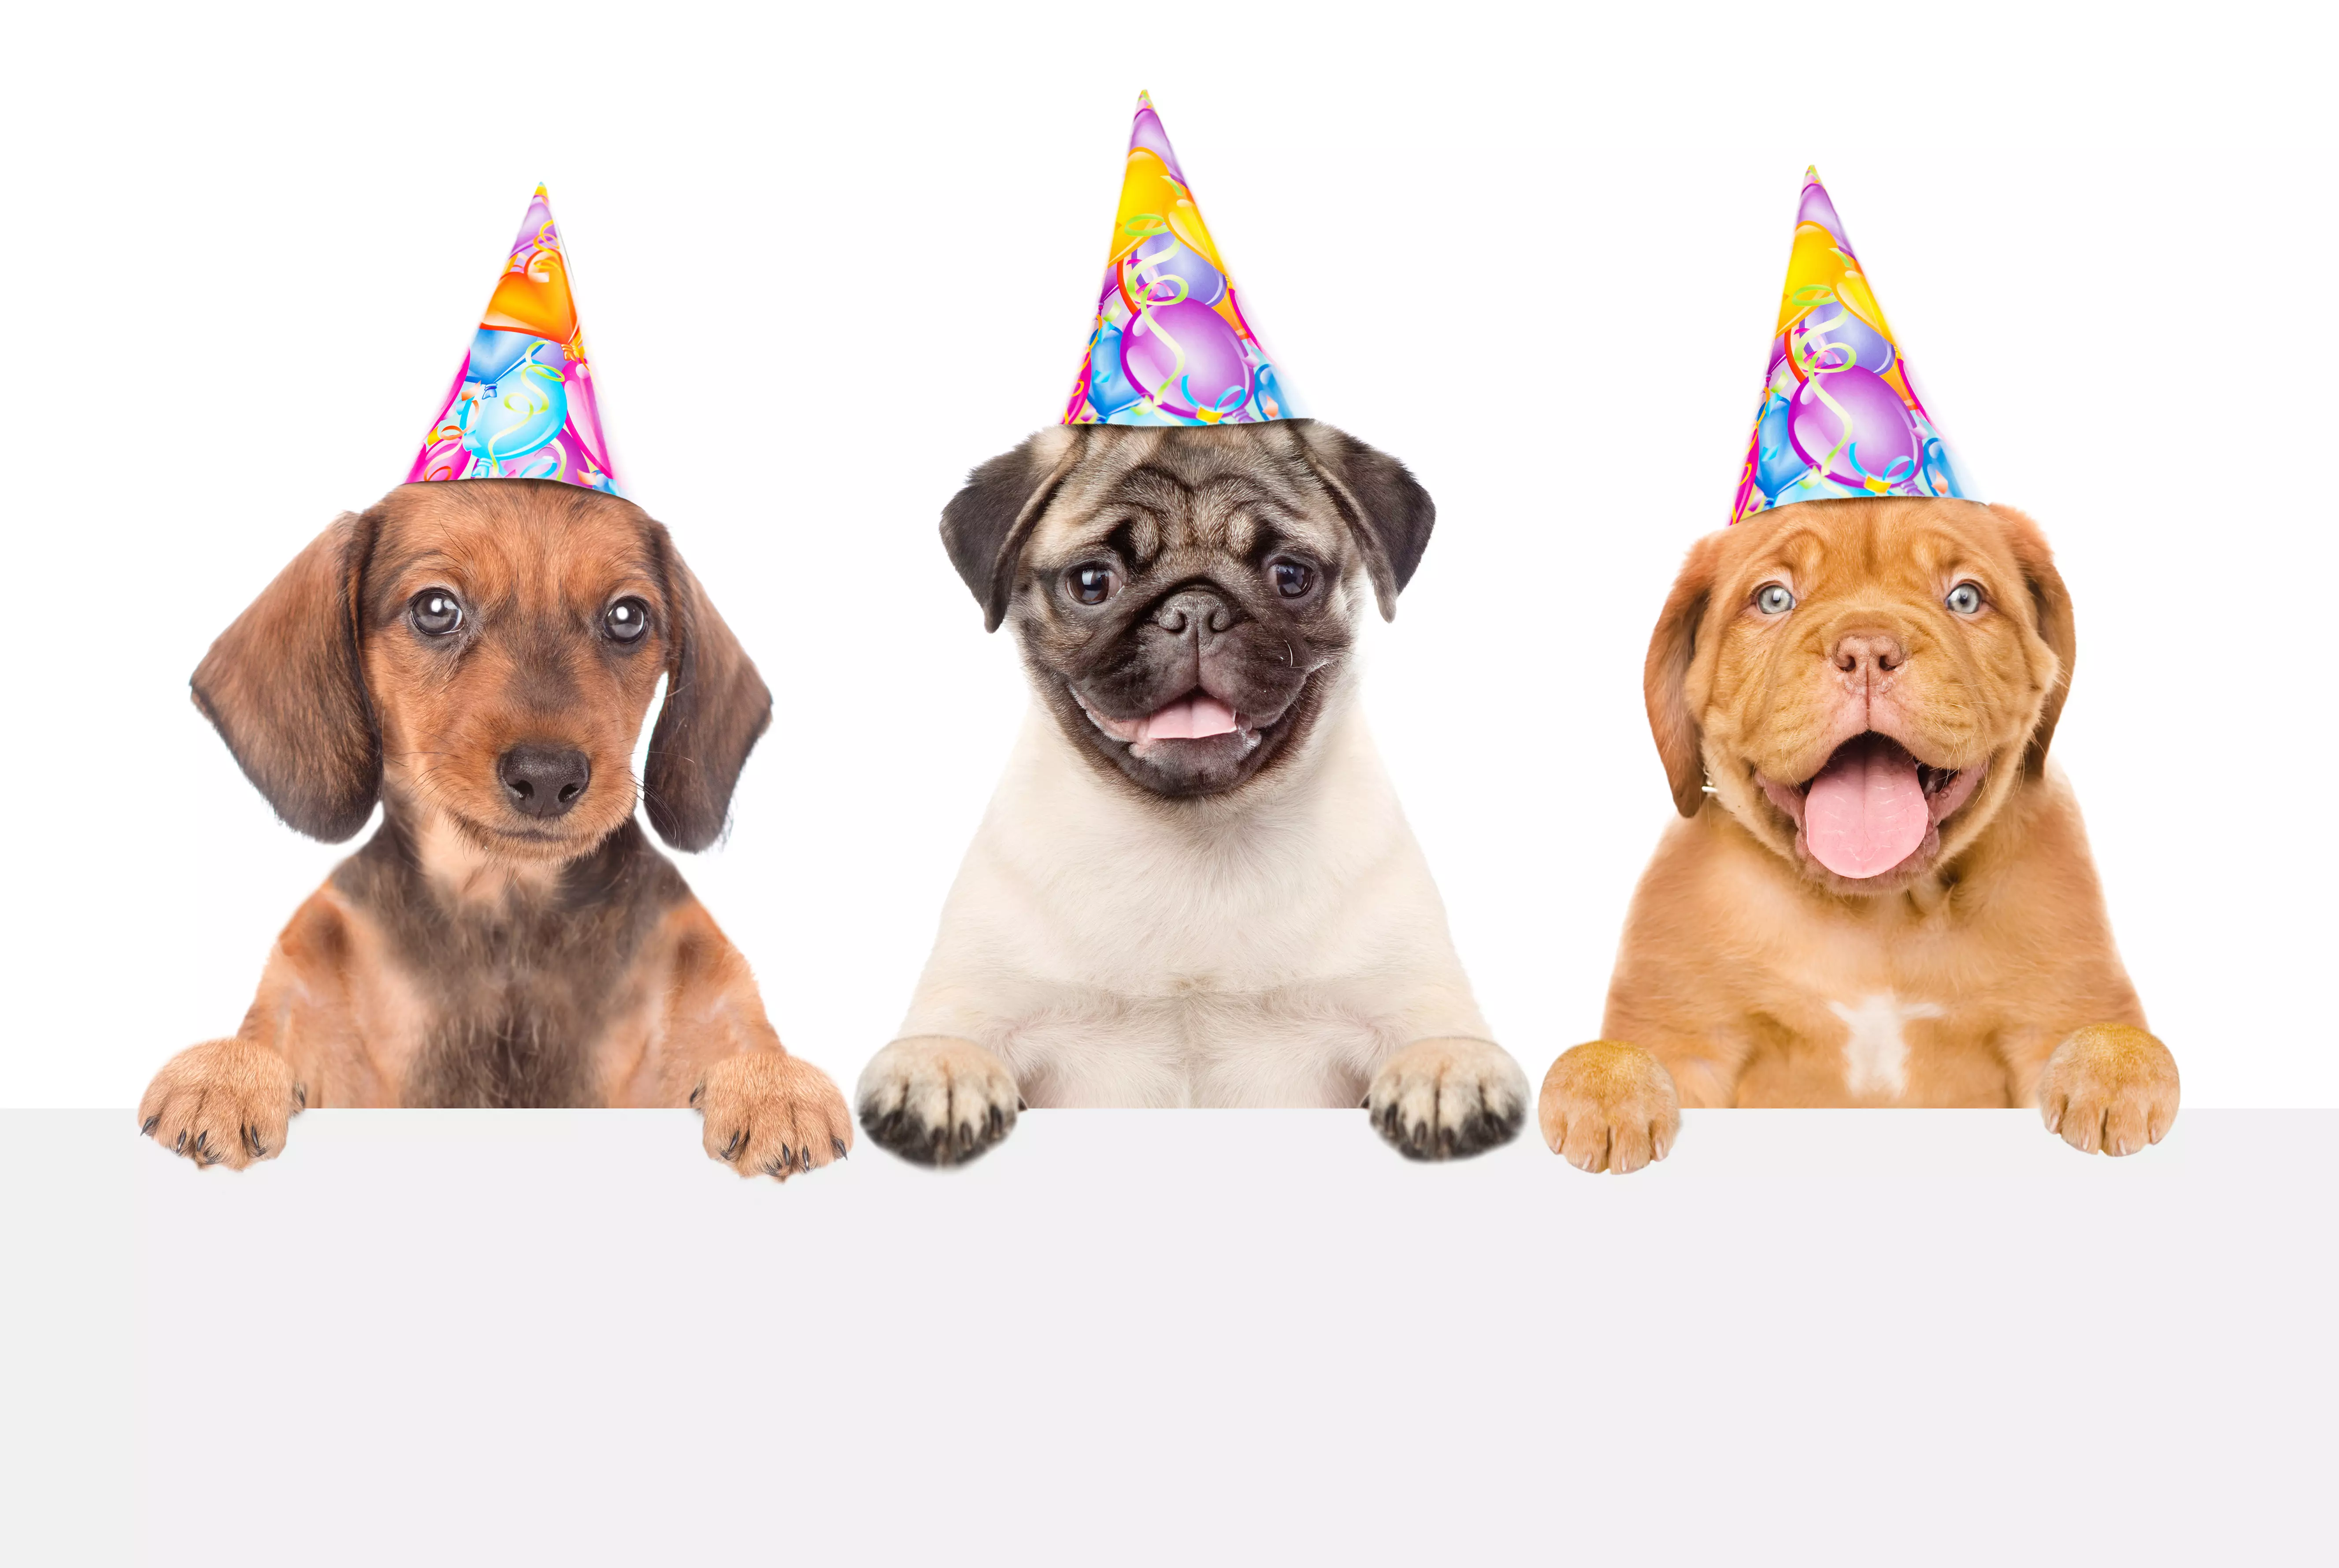 Drei ausgelassene Hunde mit Partyhüten, die direkt in die Kamera blicken und ihre Pfoten aufgelegt haben, verkörpern Freude und Feierstimmung bei flaggenmeer